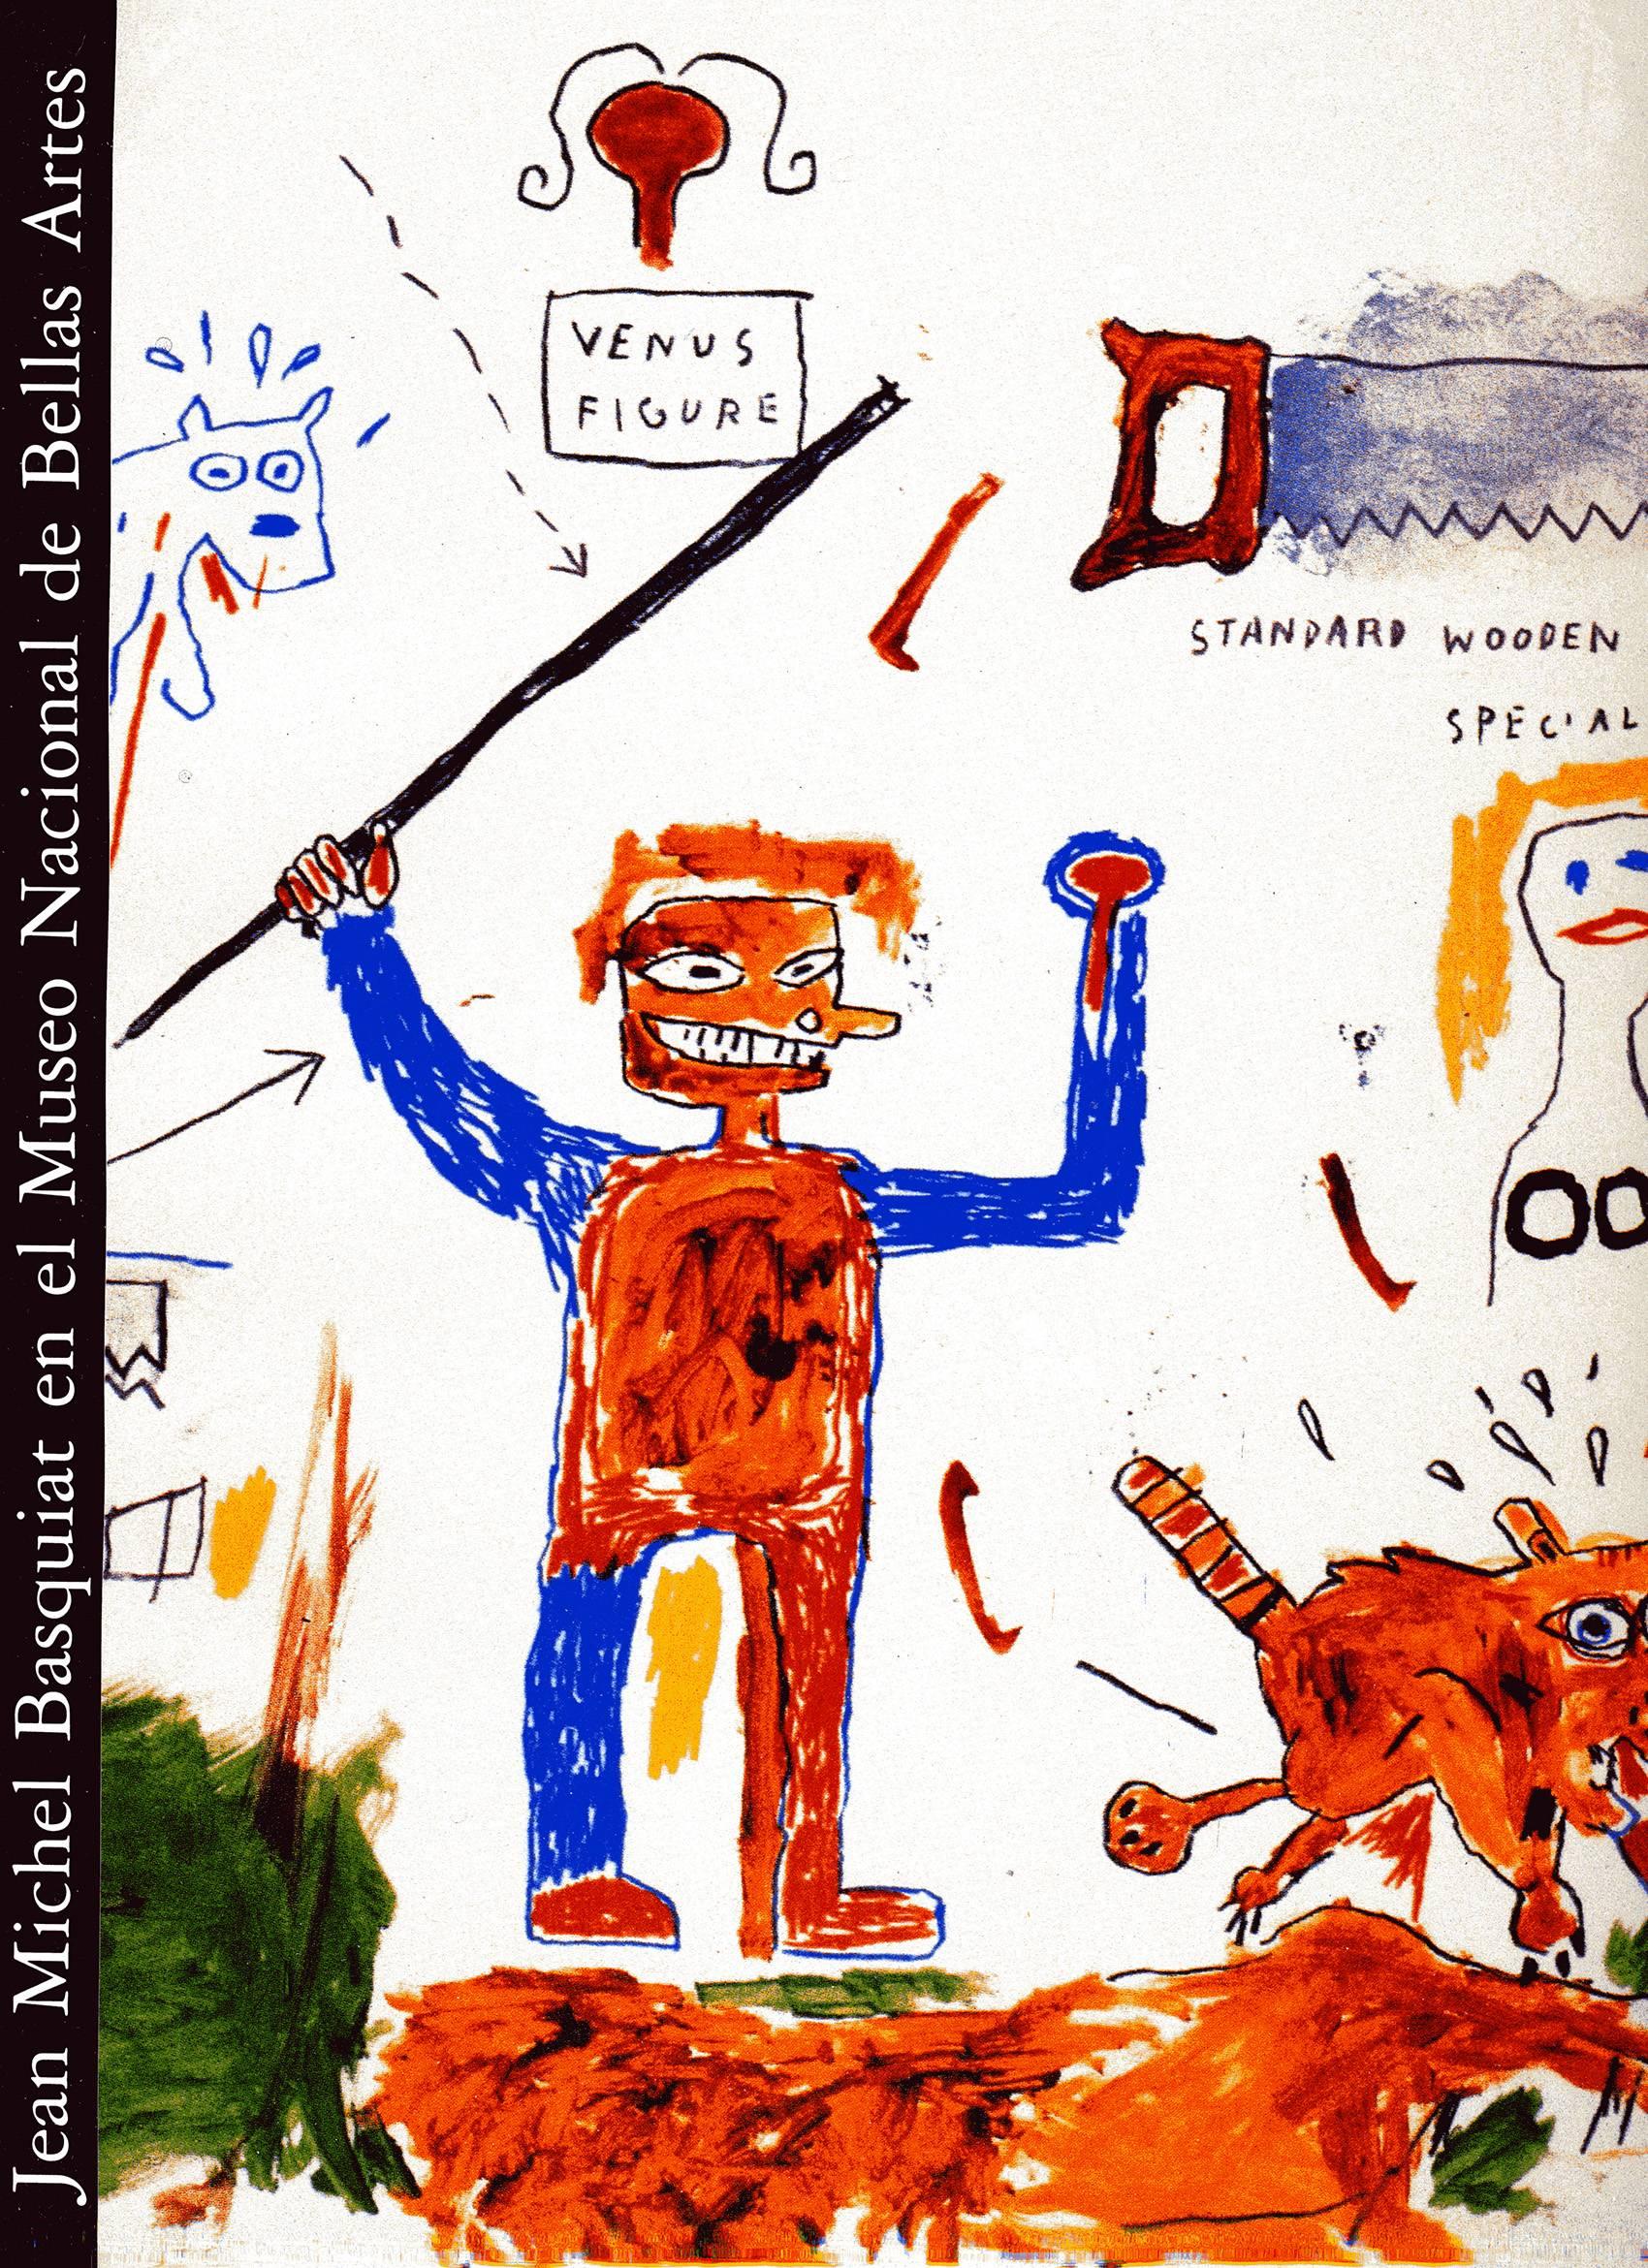 Jean Michel Basquiat en el Museo Nacional de Bellas Artes Exhibition Catalog